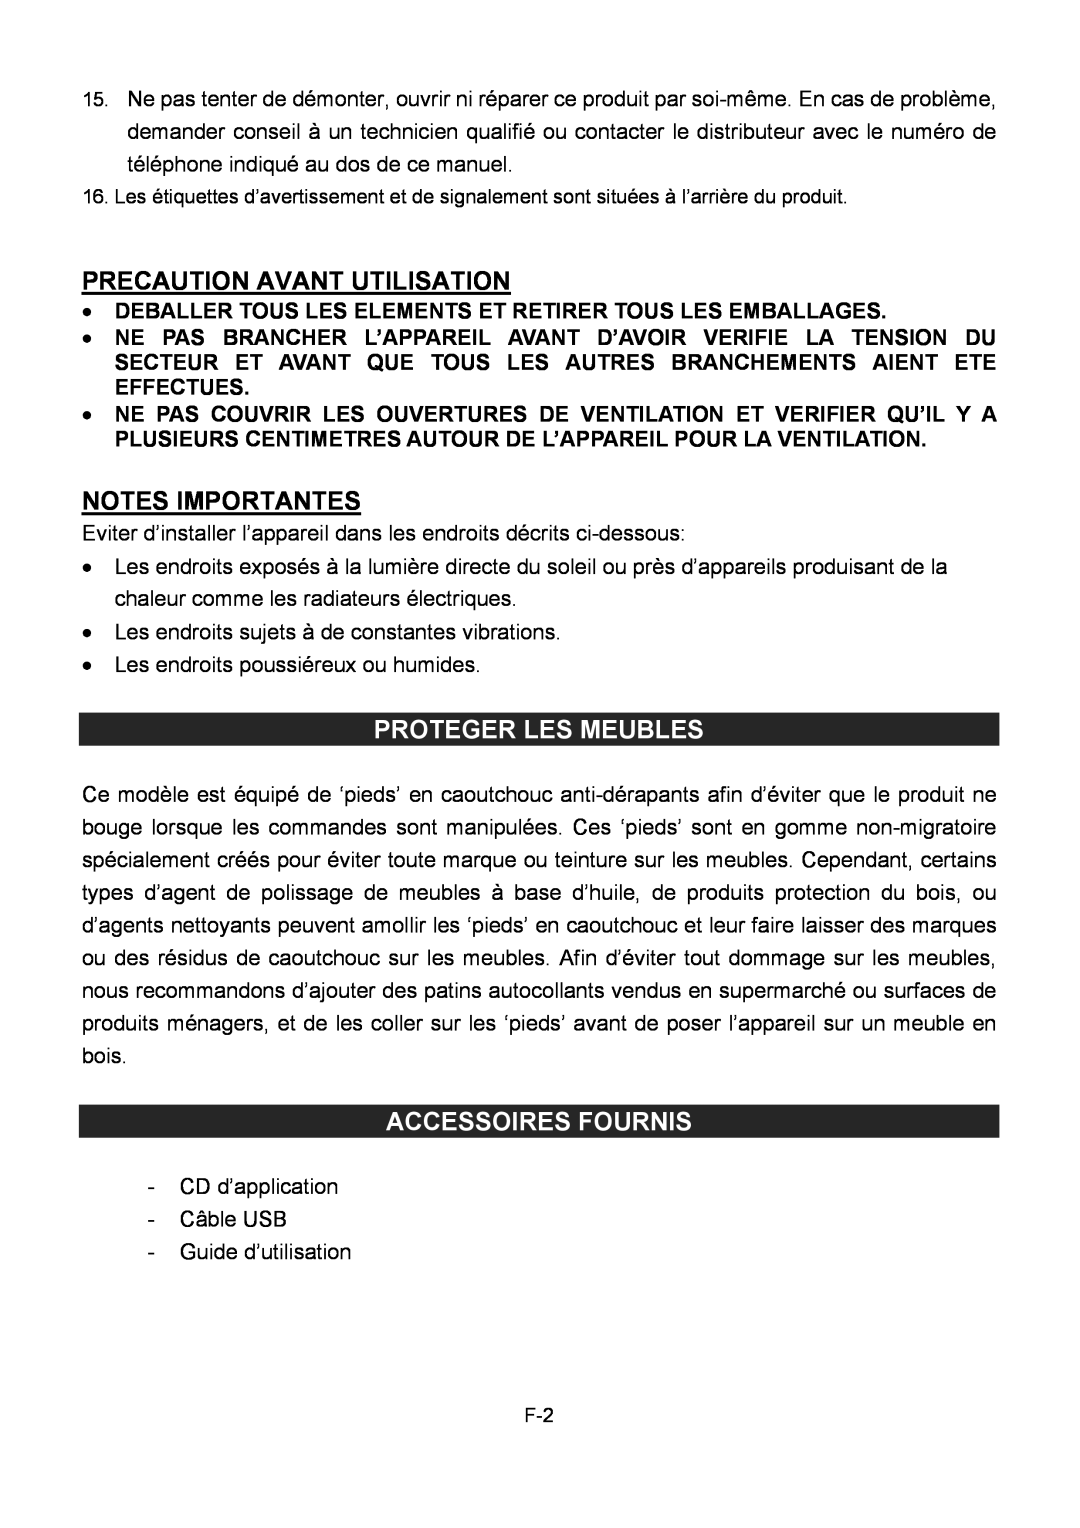 Sylvania SRCD872 Proteger Les Meubles, Accessoires Fournis, Precaution Avant Utilisation, Notes Importantes 